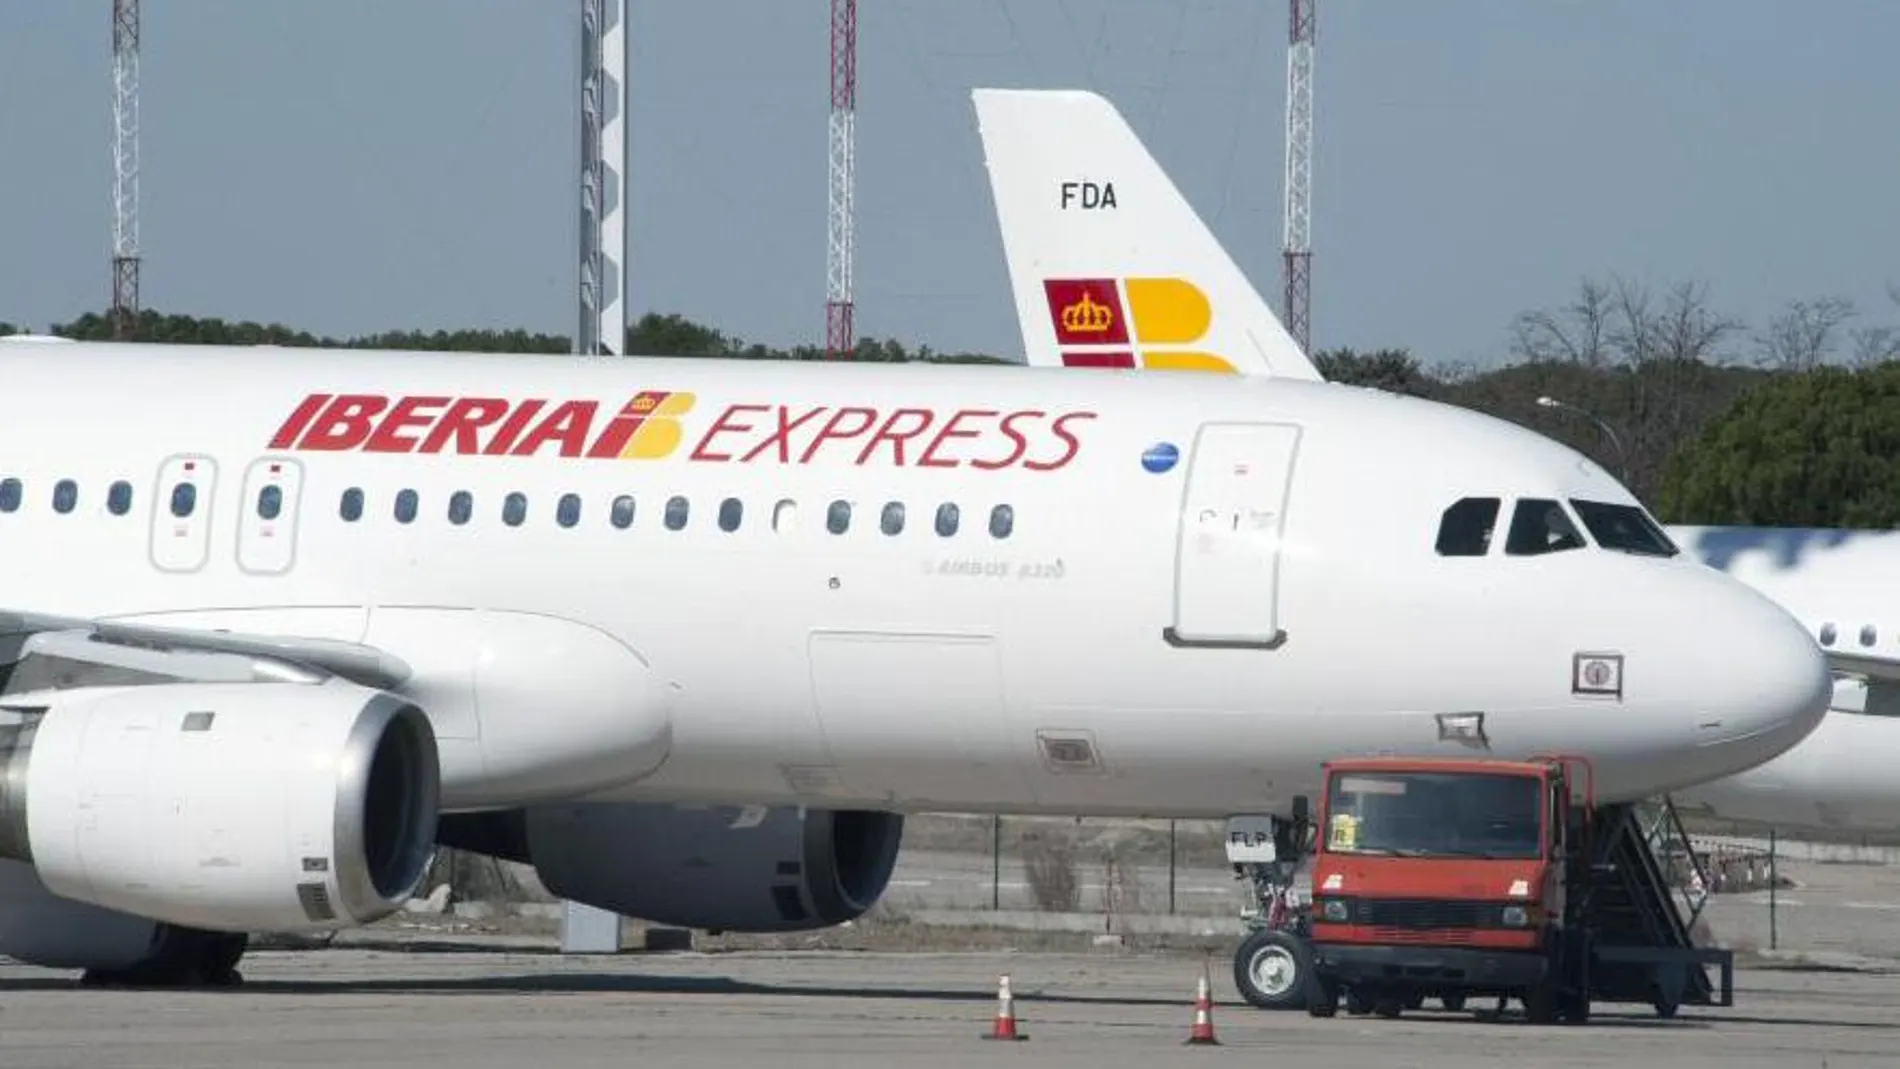 Iberia Express ha operado una red compuesta por 31 rutas diferentes, de la cuales 18 son nacionales y 13 internacionales.